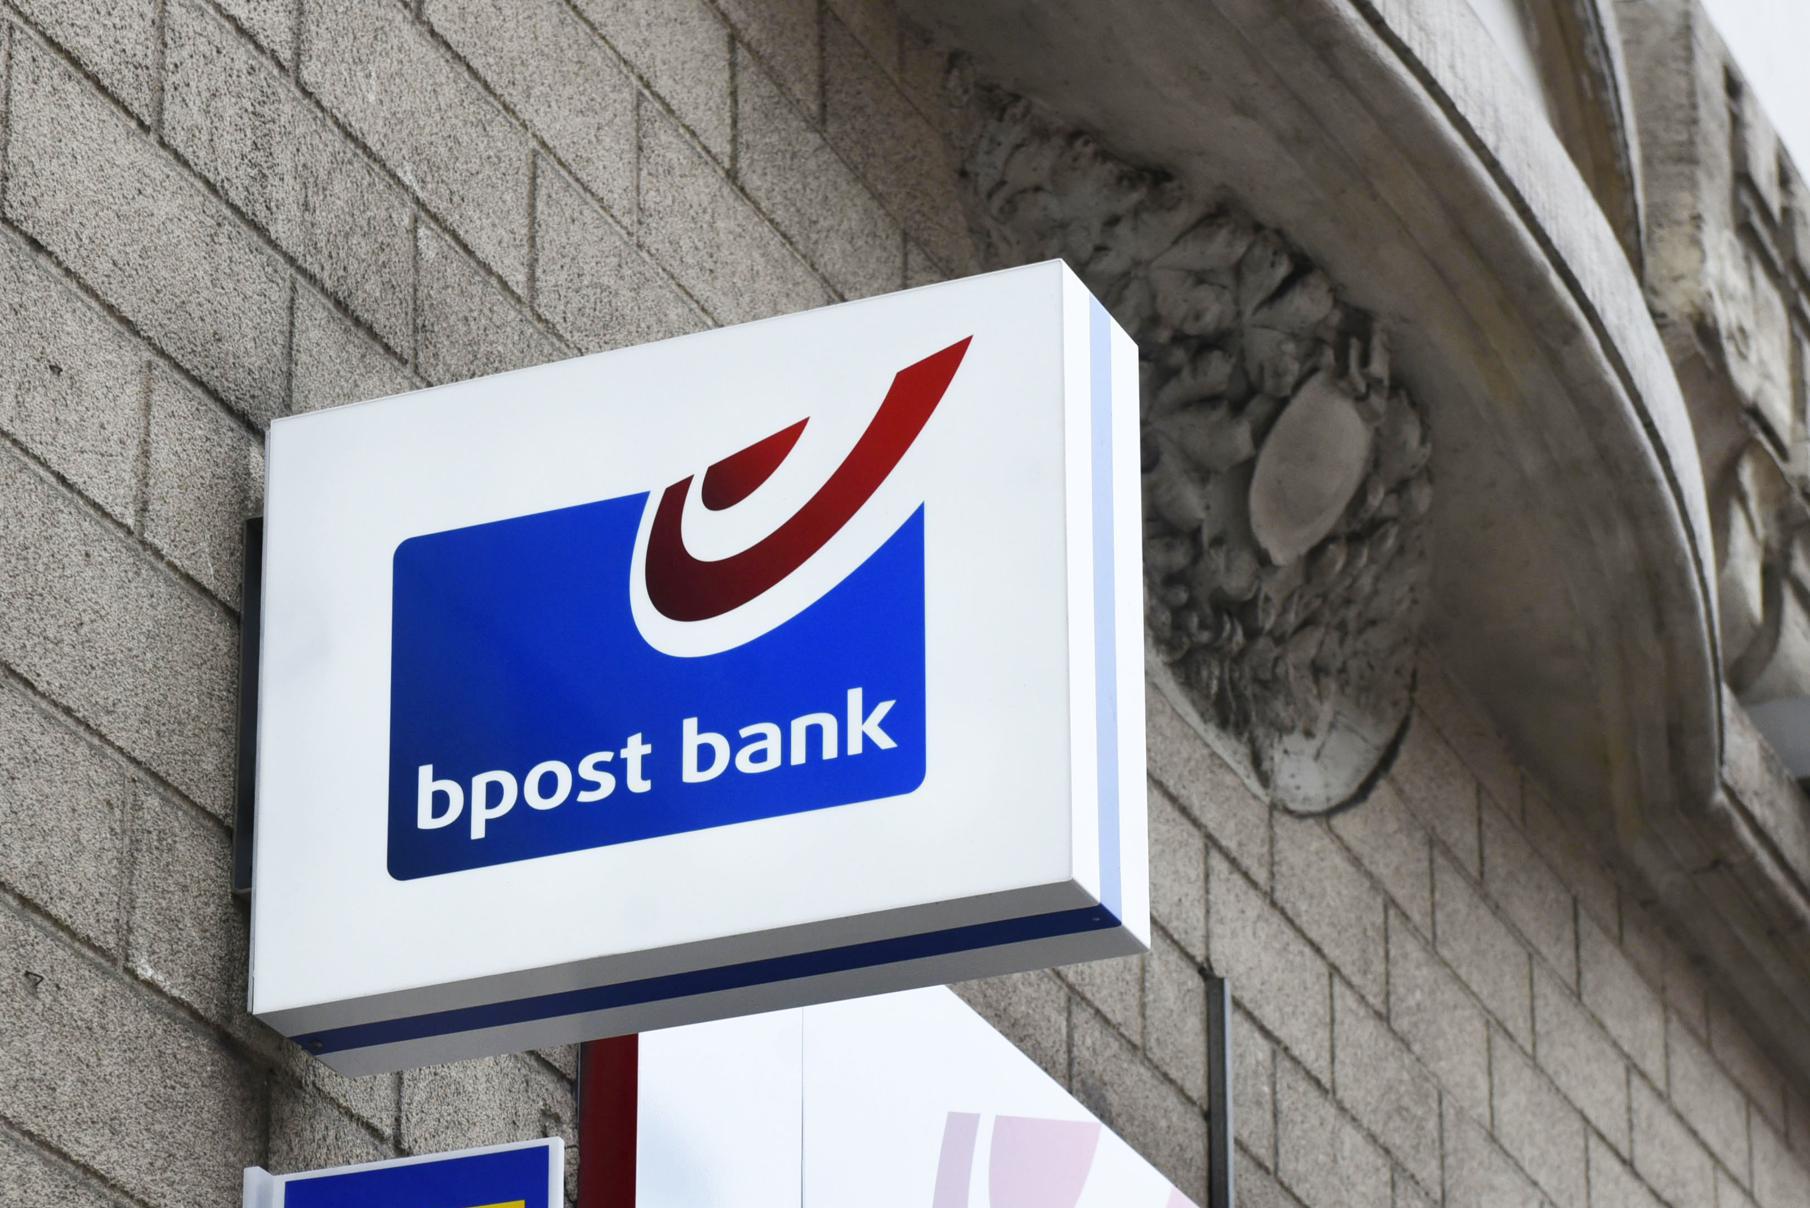 Çok sayıda Bpost Bank müşterisi, geçişten on gün sonra hâlâ hesaplarına erişemiyor